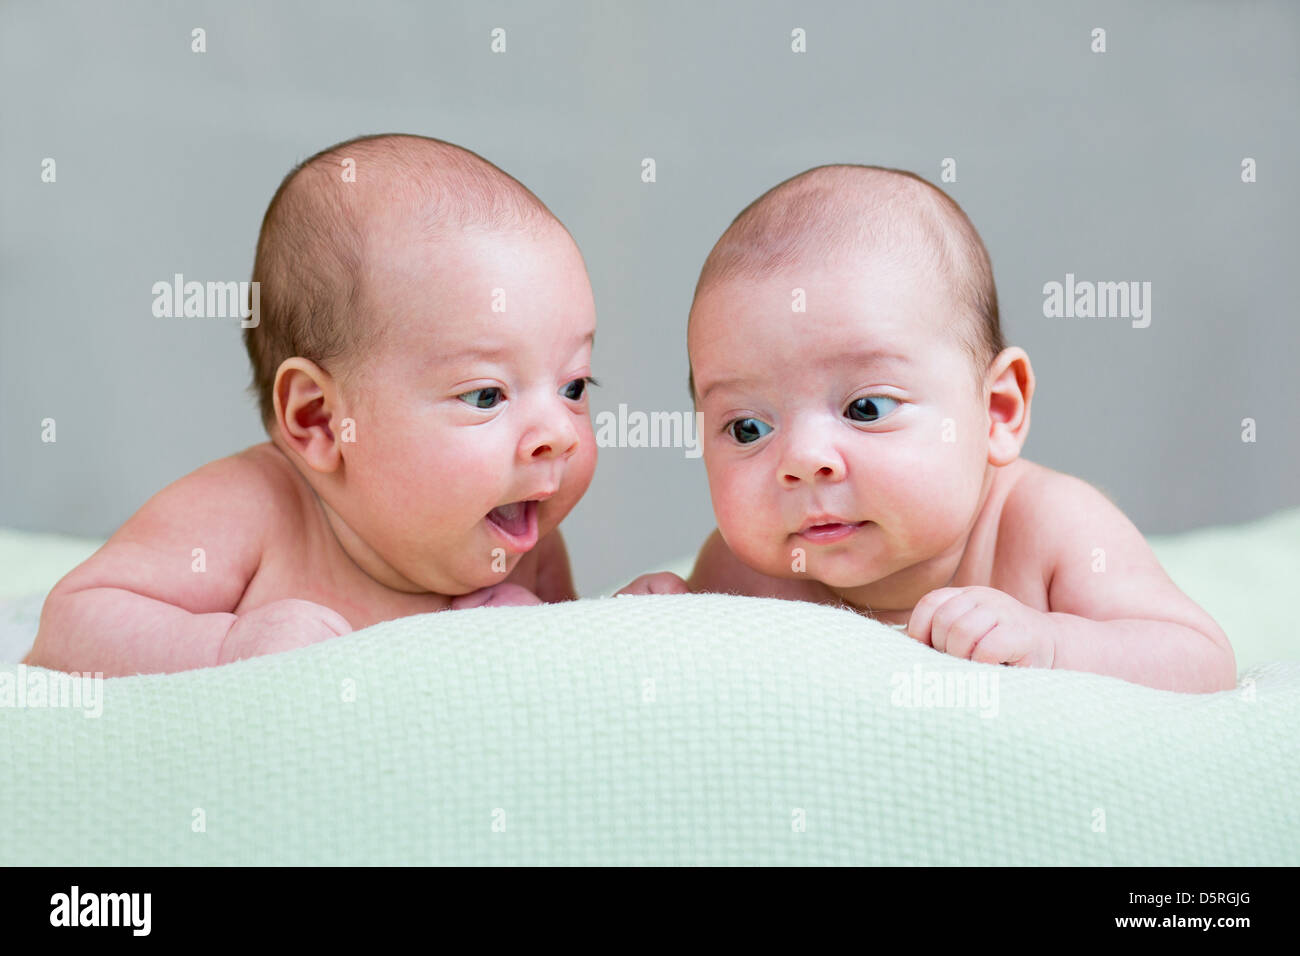 Bébé nouveau-né des jumeaux lying on stomach Banque D'Images